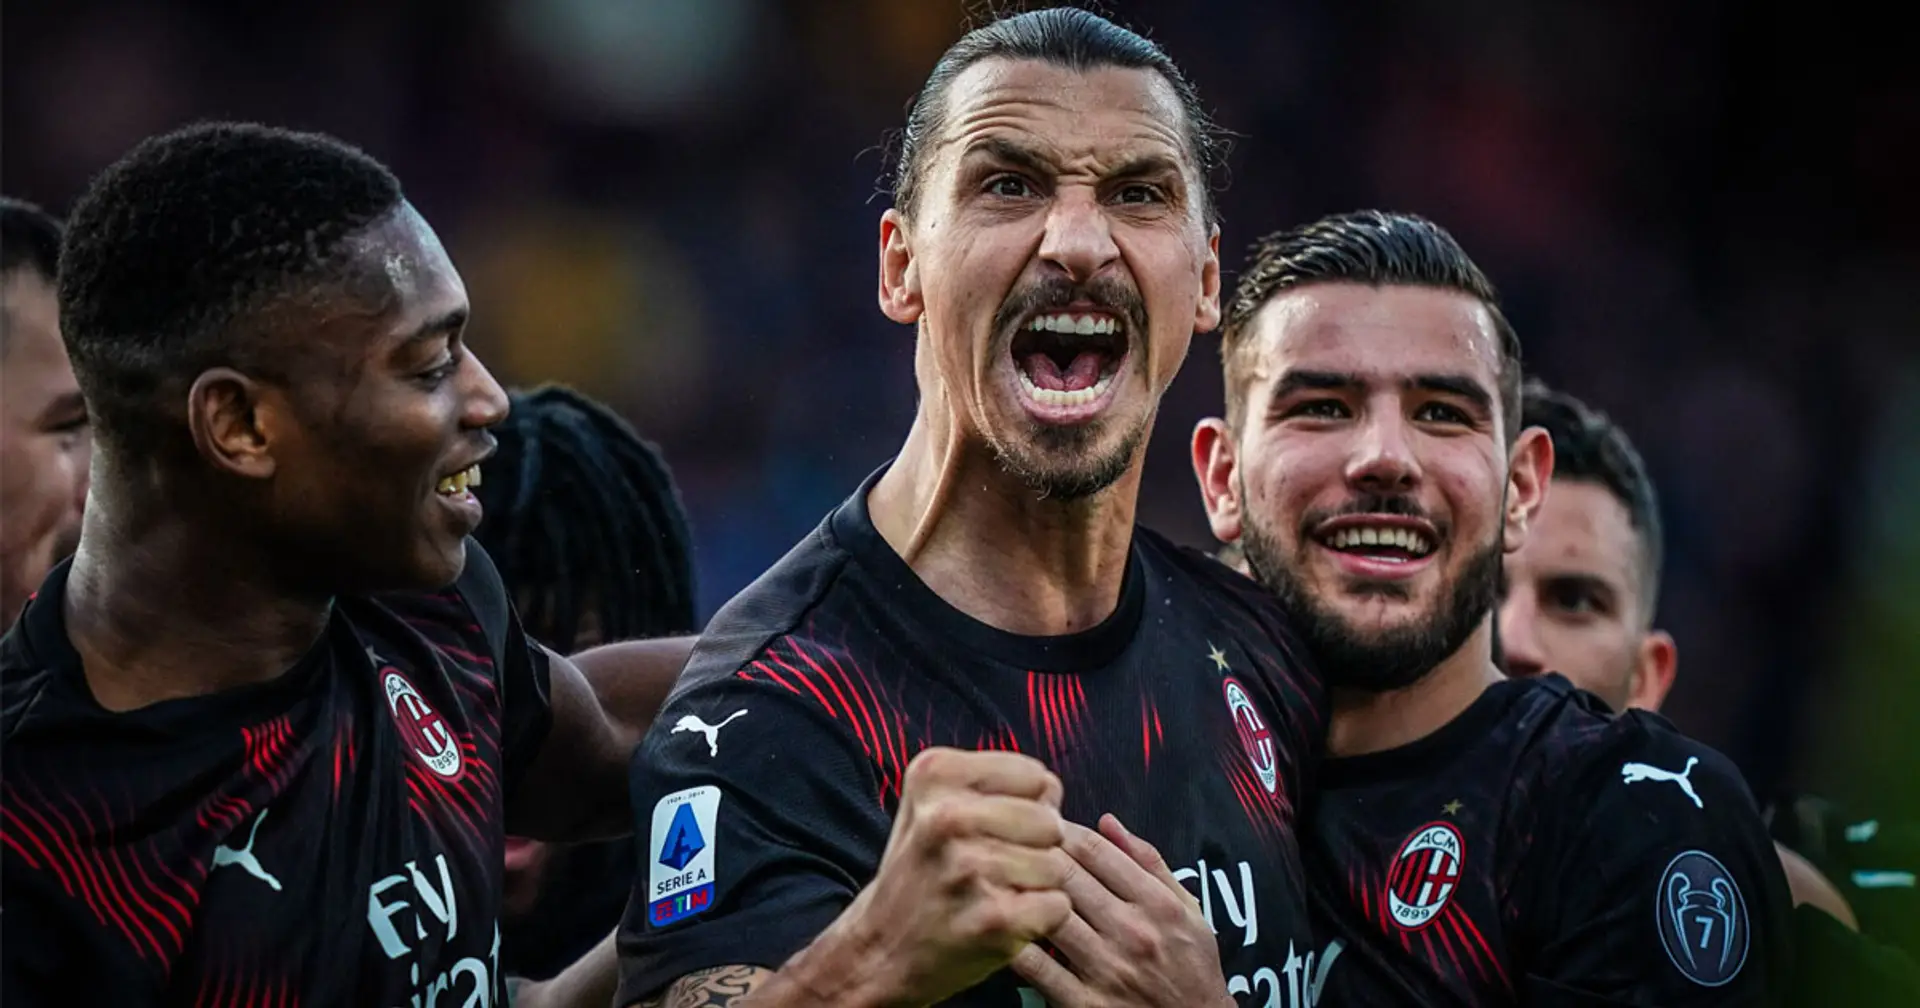 E' il turno di Cagliari-Milan: il popolo rossonero si aspetta un'altra vittoria per sognare